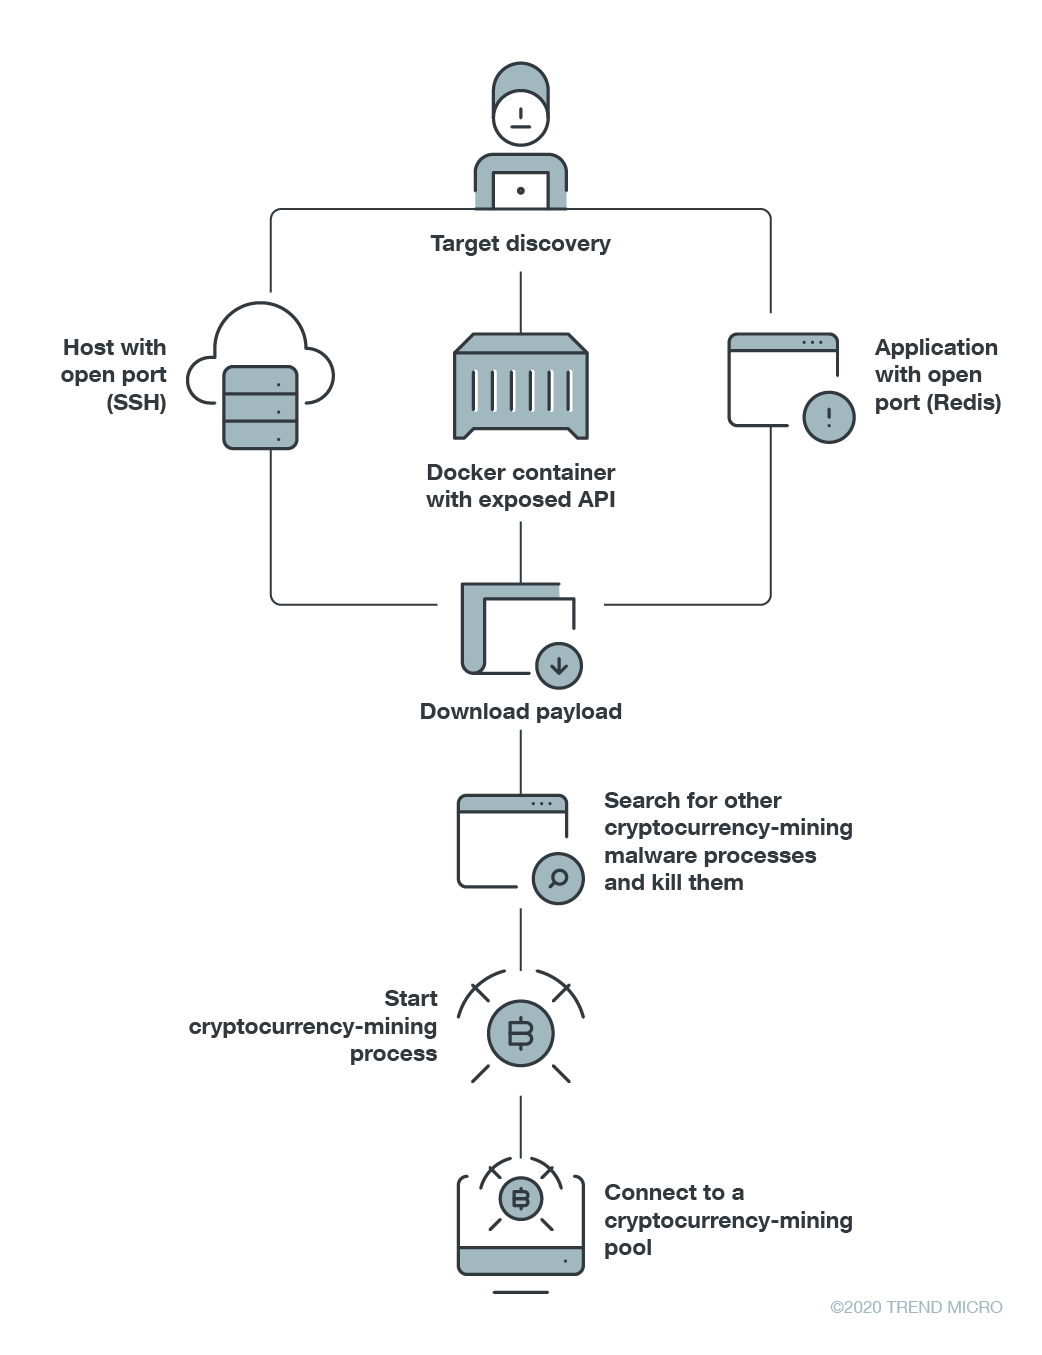 虛擬加密貨幣挖礦惡意程式如何經由開放 API 感染系統。